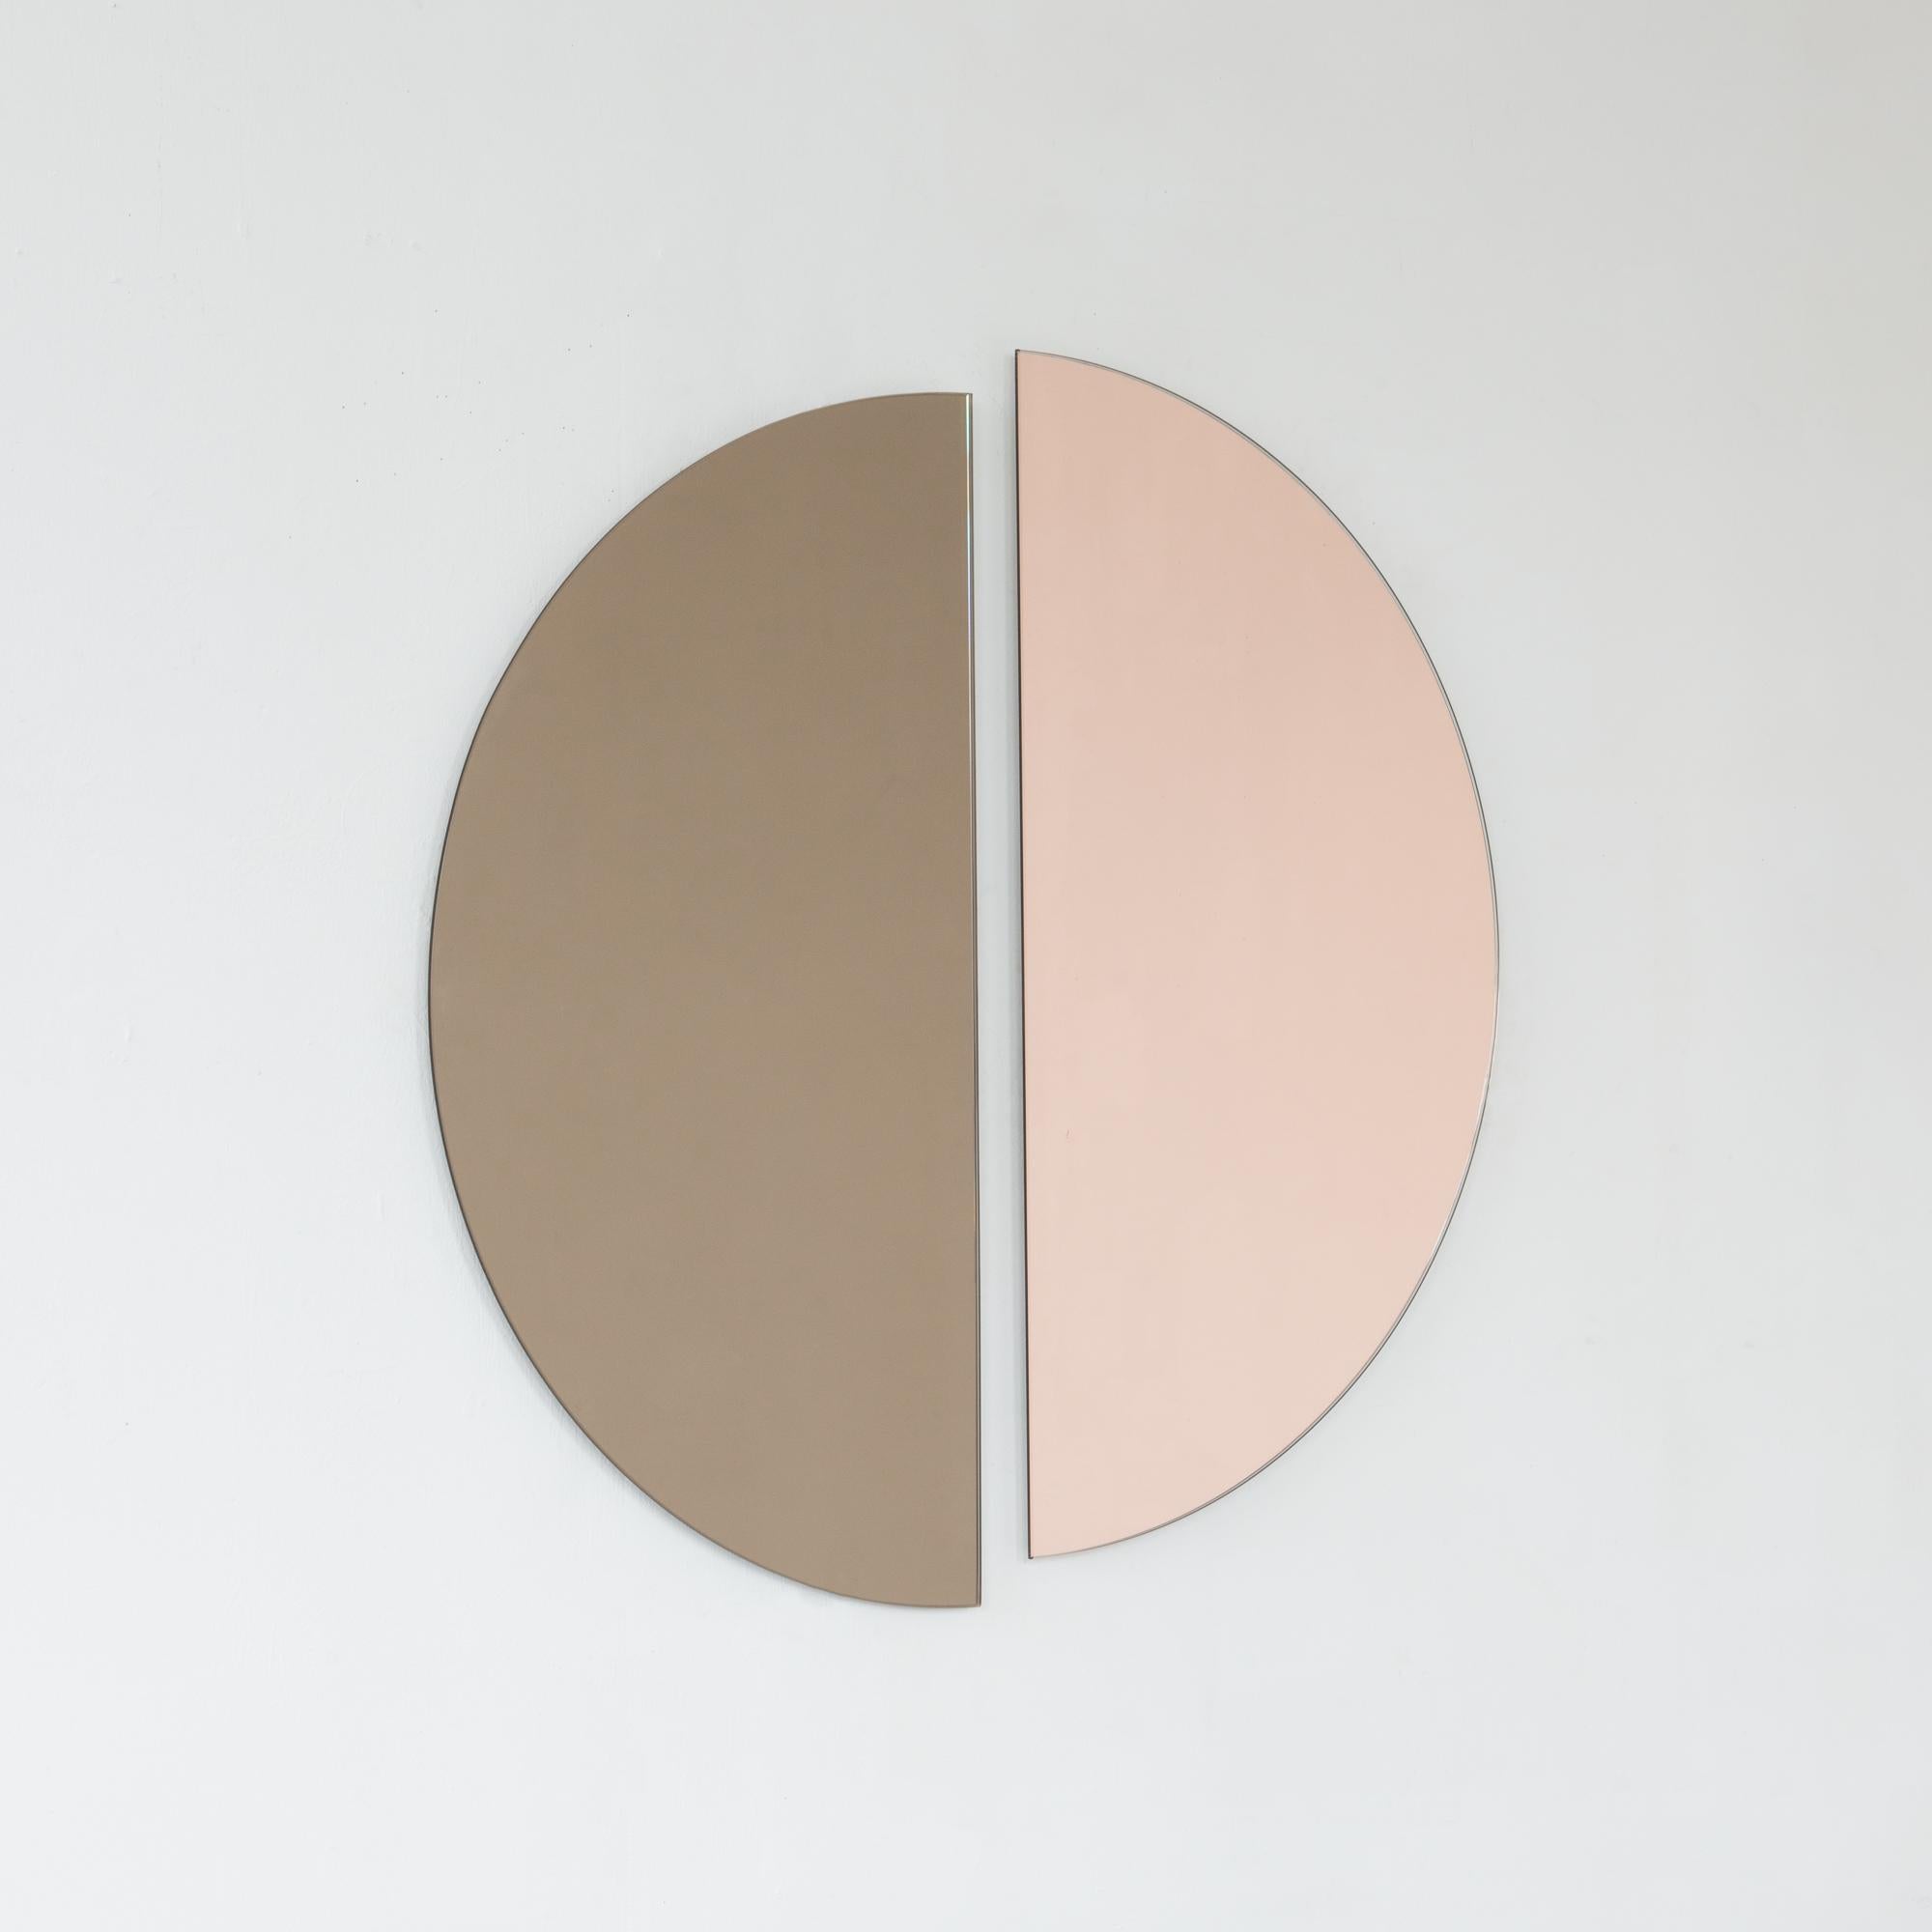 Set aus zwei minimalistischen halbmondförmigen Luna™-Spiegeln in Bronze und Roségold (Pfirsich) mit Schwebeeffekt. Ausgestattet mit einem hochwertigen und ausgeklügelten Aufhängesystem für eine flexible Installation in 4 verschiedenen Richtungen.